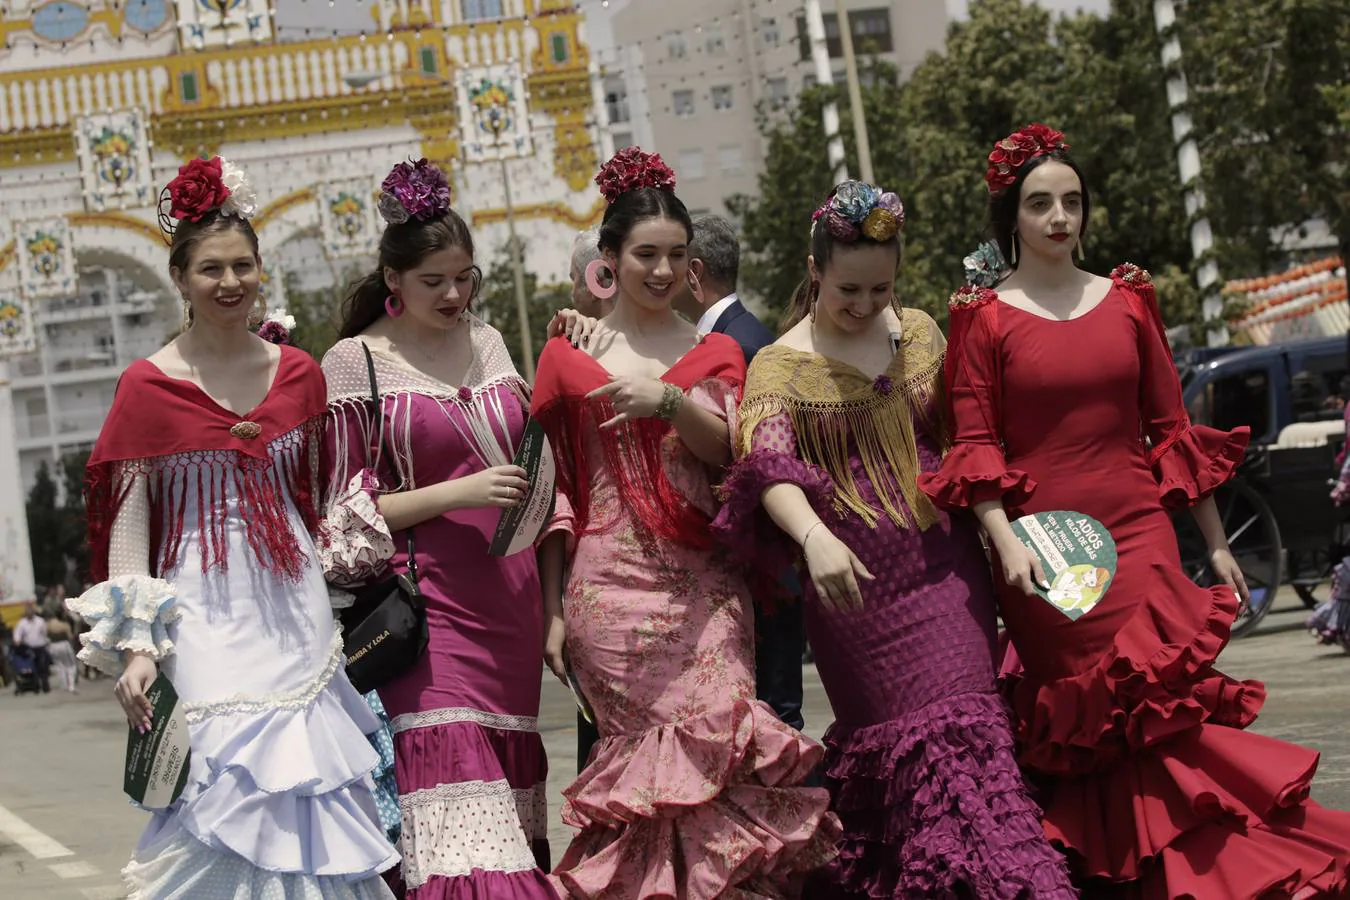 Tendencias para la Feria 2019. ¿Qué trajes de flamenca se llevan este año?